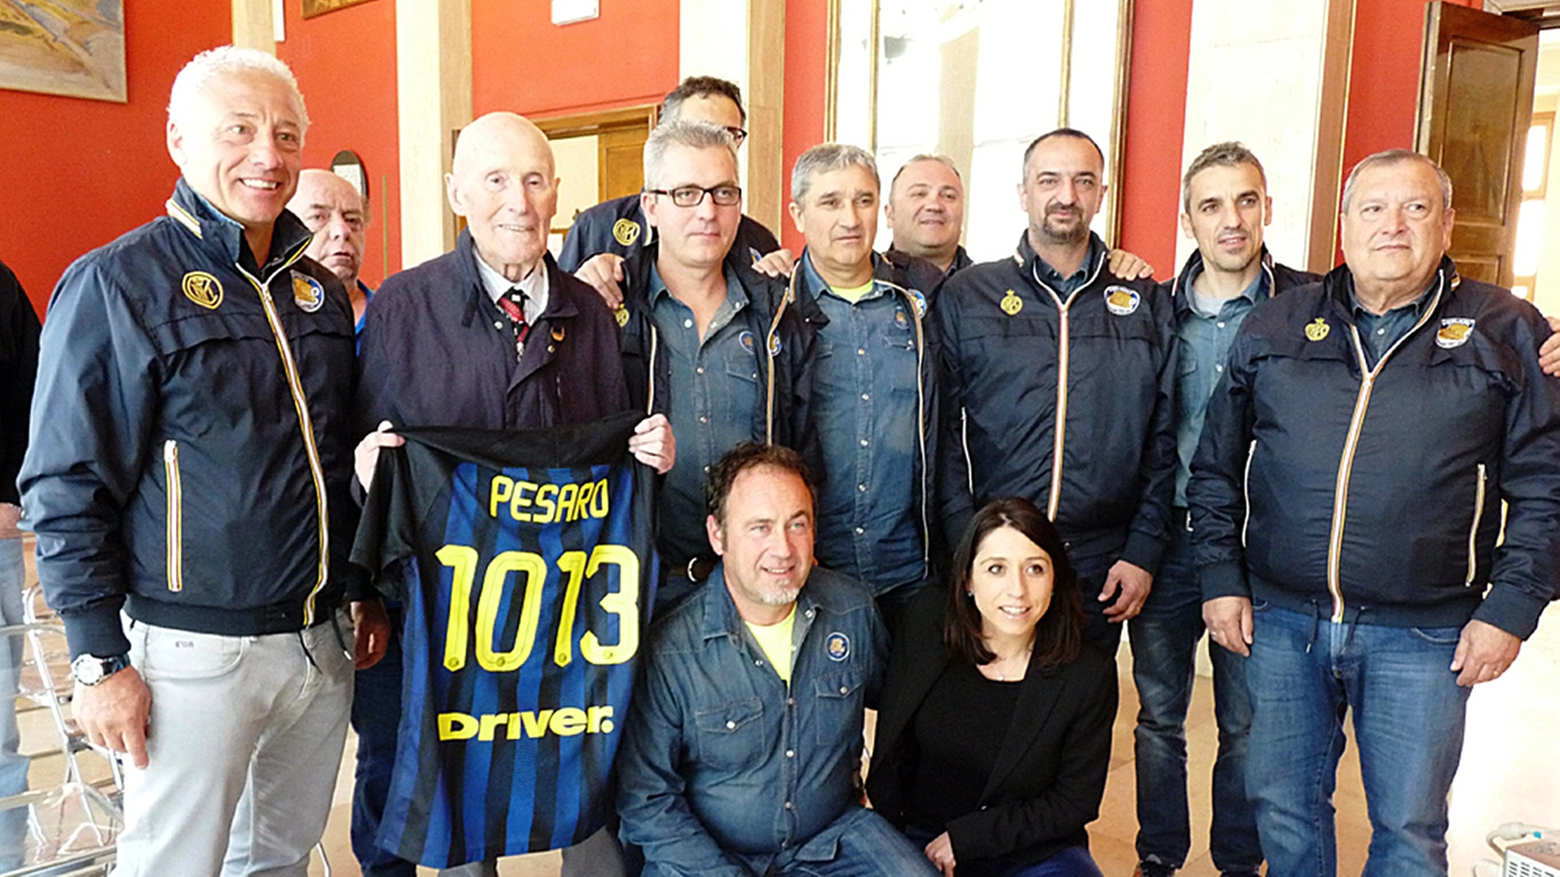 Inter Club pesaro, la tessera numero mille al super tifoso Otelli Ridolfi, 93 anni